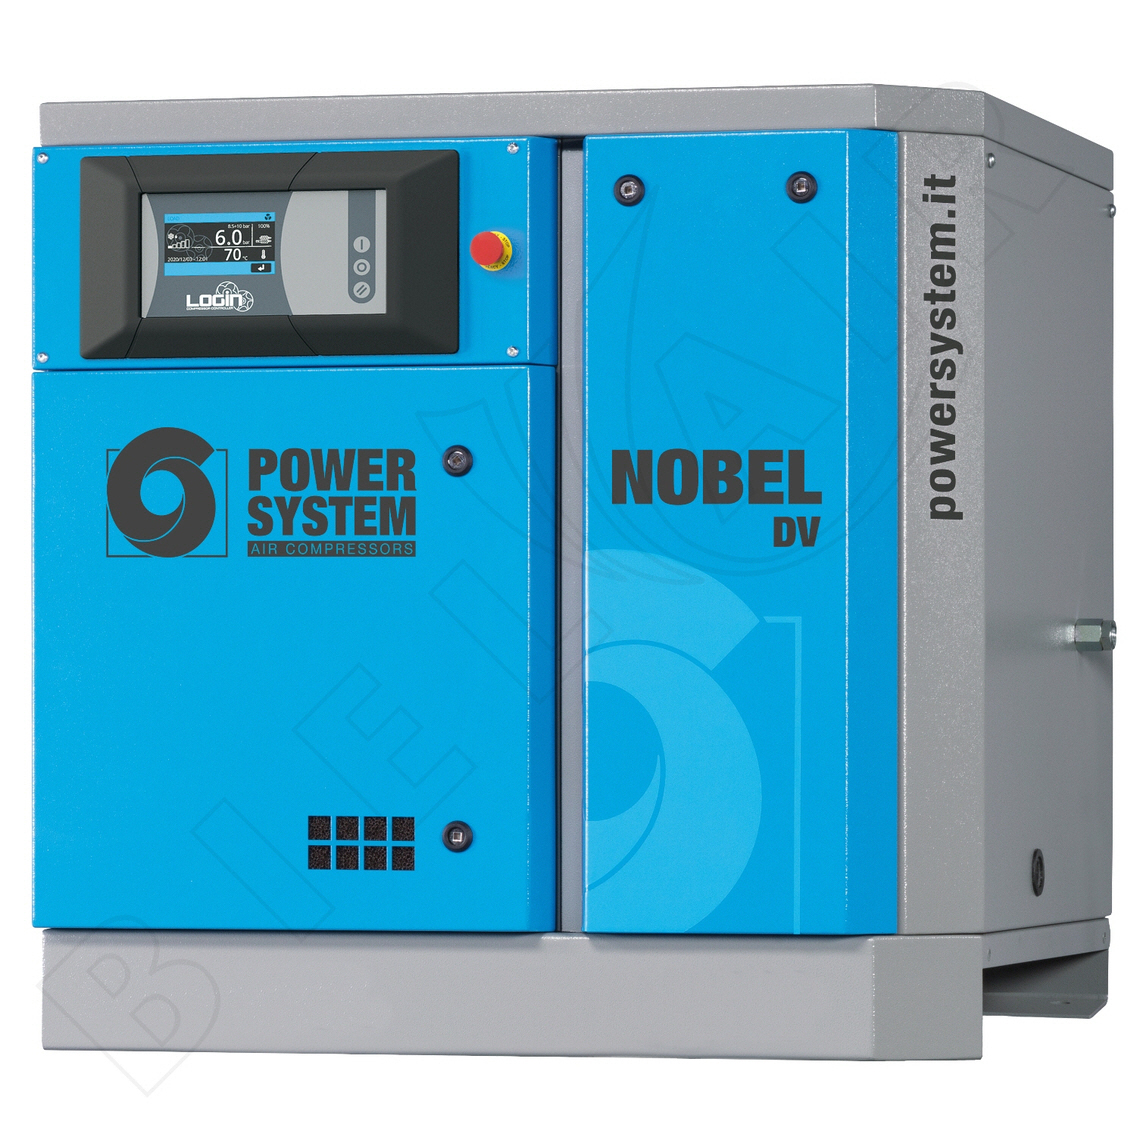 POWERSYSTEM Schraubenkompressor NOBEL 7.5-08 DV (IE3) LOGIN Frequenzgesteuert